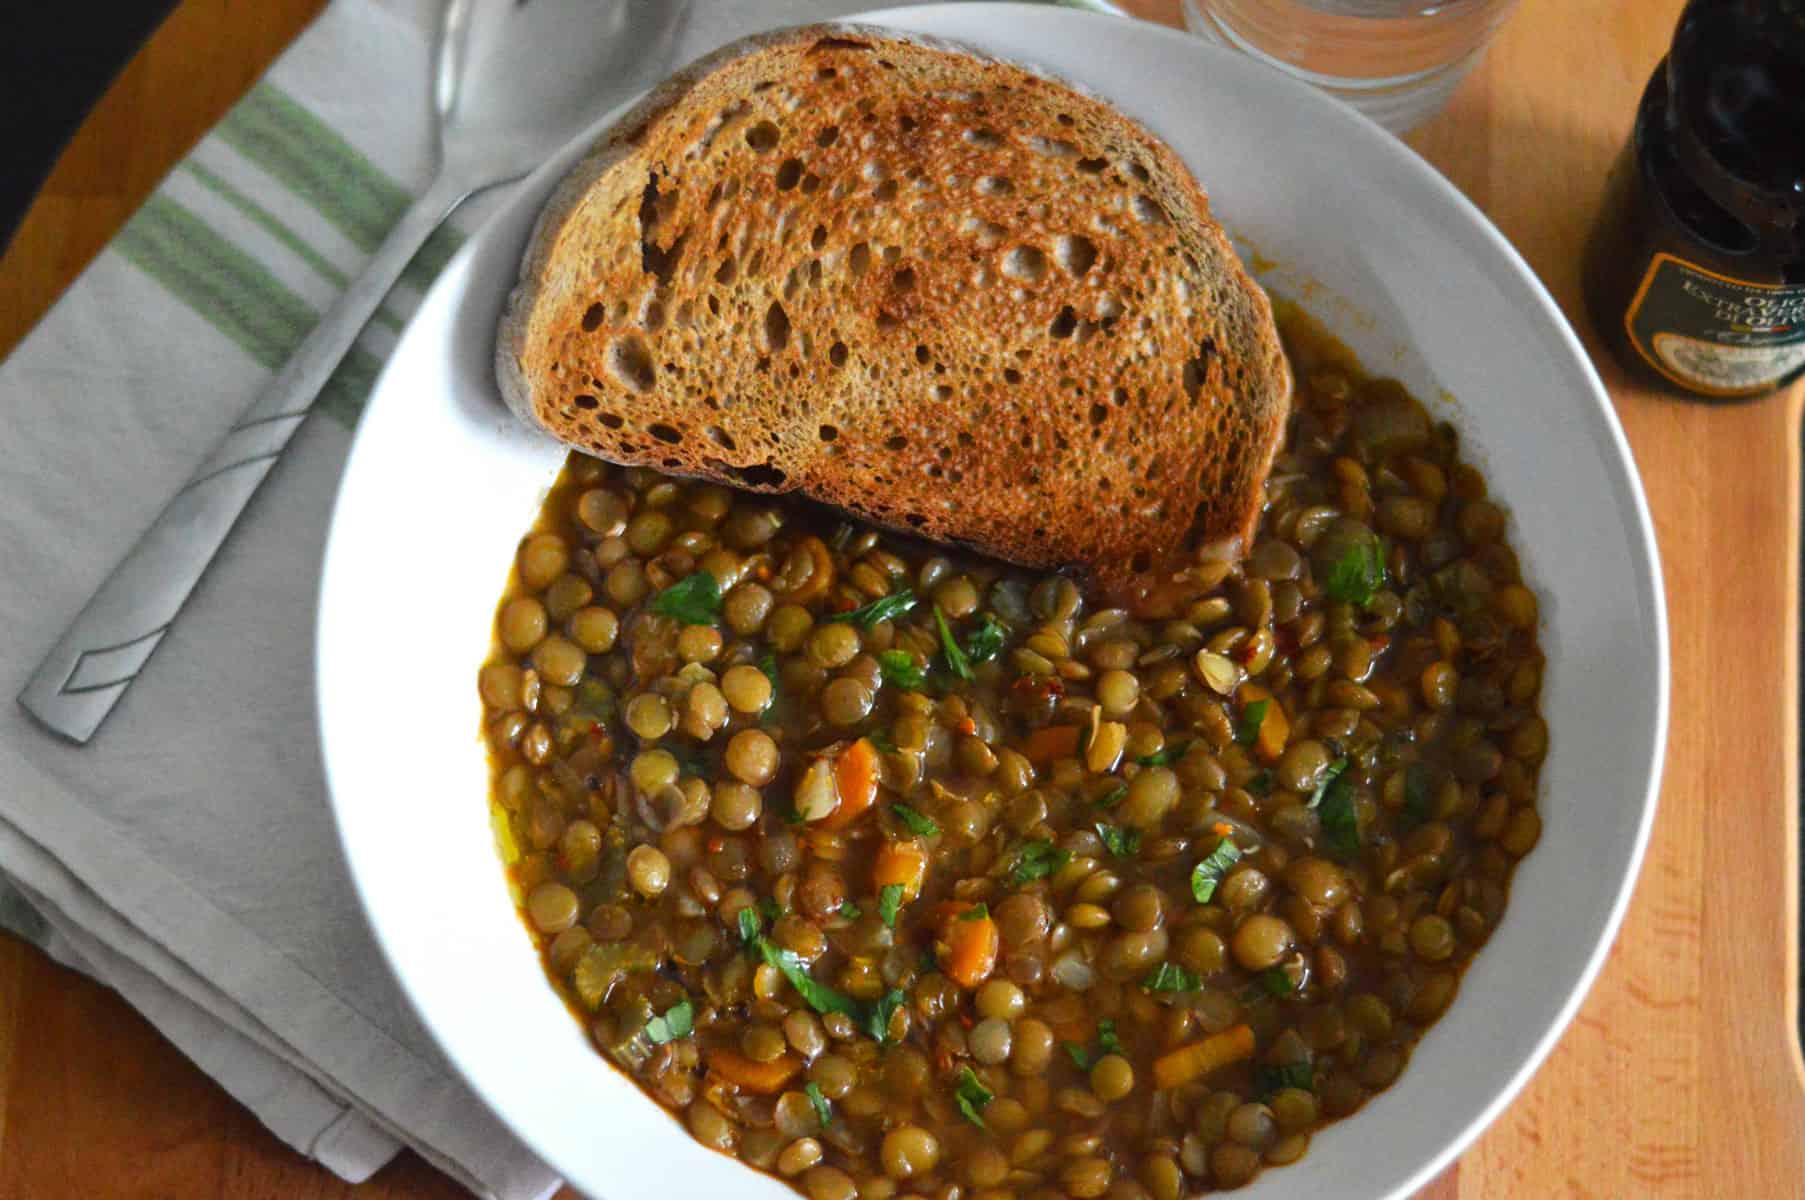 Puy lentil soup in a white bowl